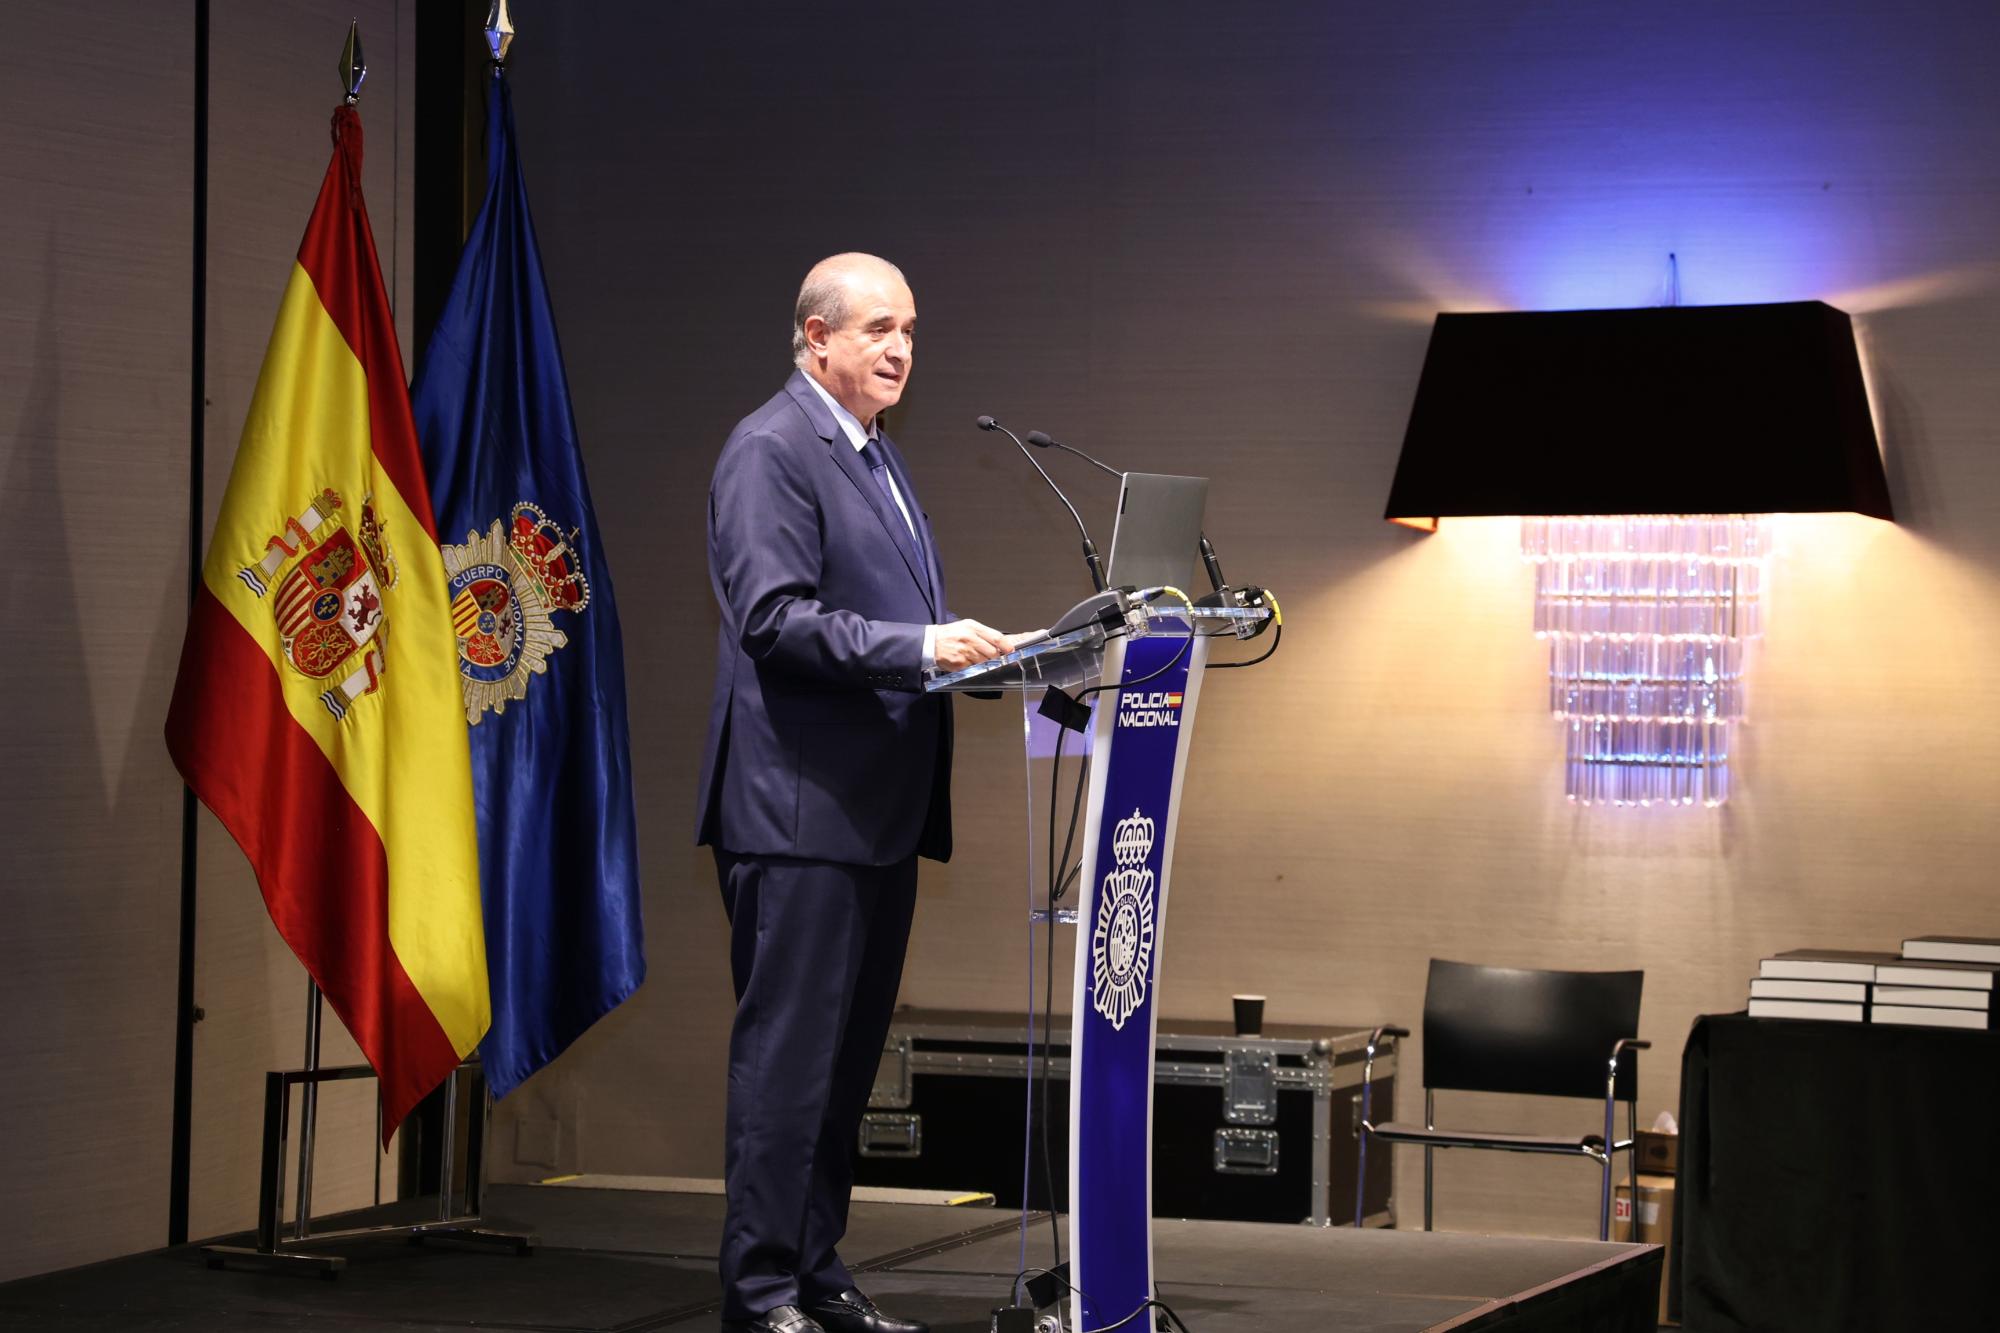 El Director de la Policía, Francisco Pardo, reúne en Madrid a los principales responsables policiales antidroga